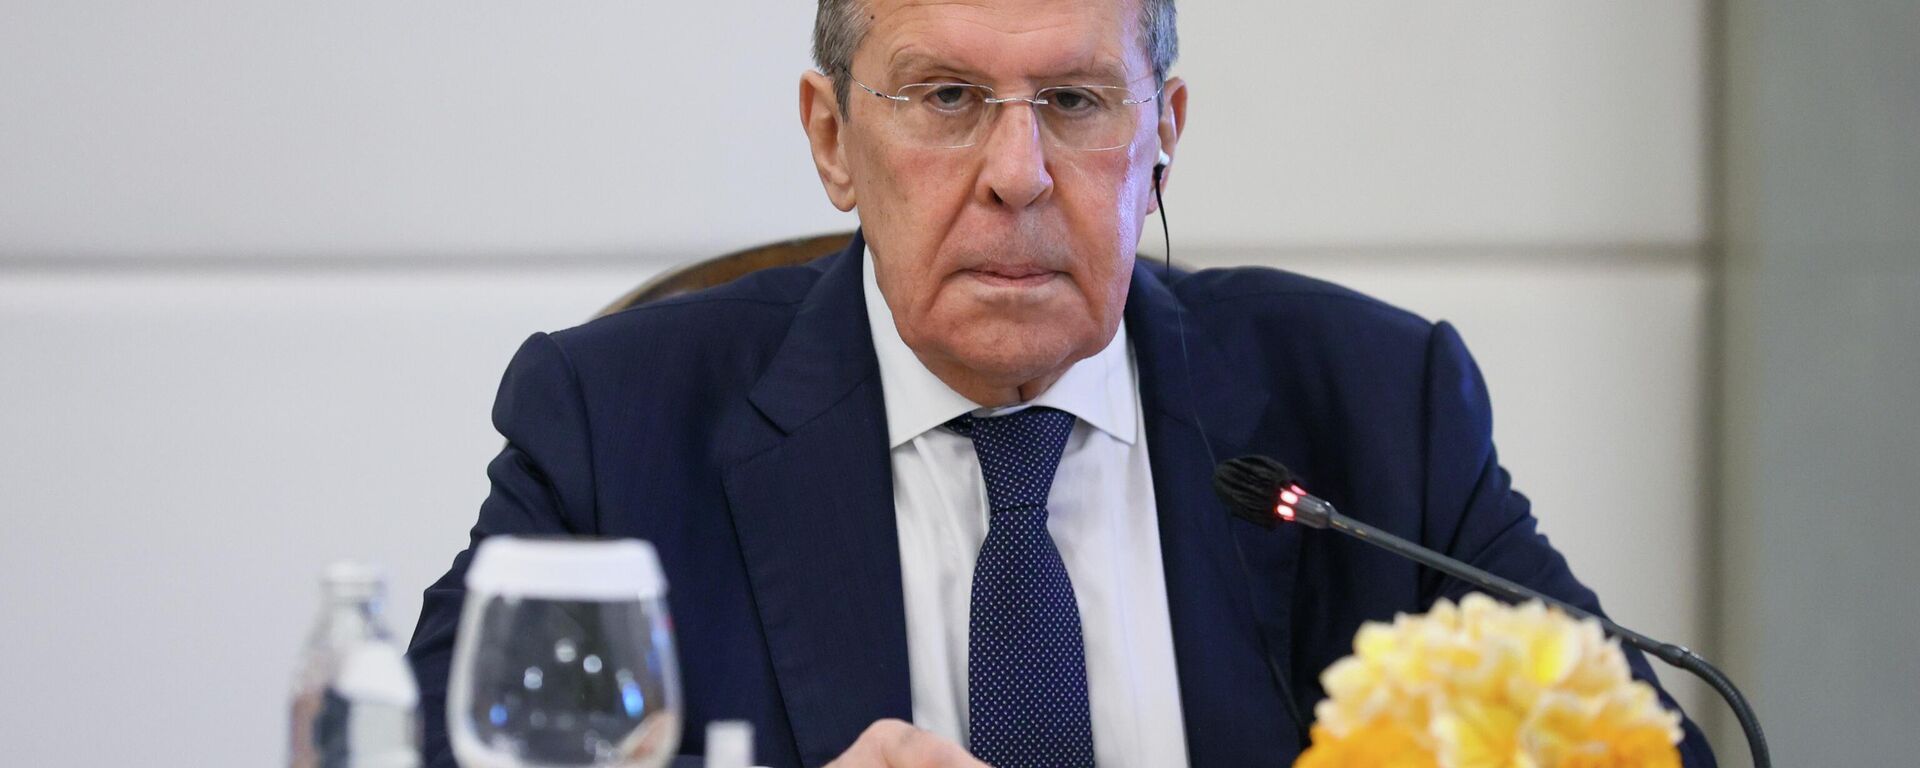 Ngoại trưởng Nga Sergey Lavrov tham gia Hội đồng Bộ trưởng G20 ở Indonesia - Sputnik Việt Nam, 1920, 08.07.2022